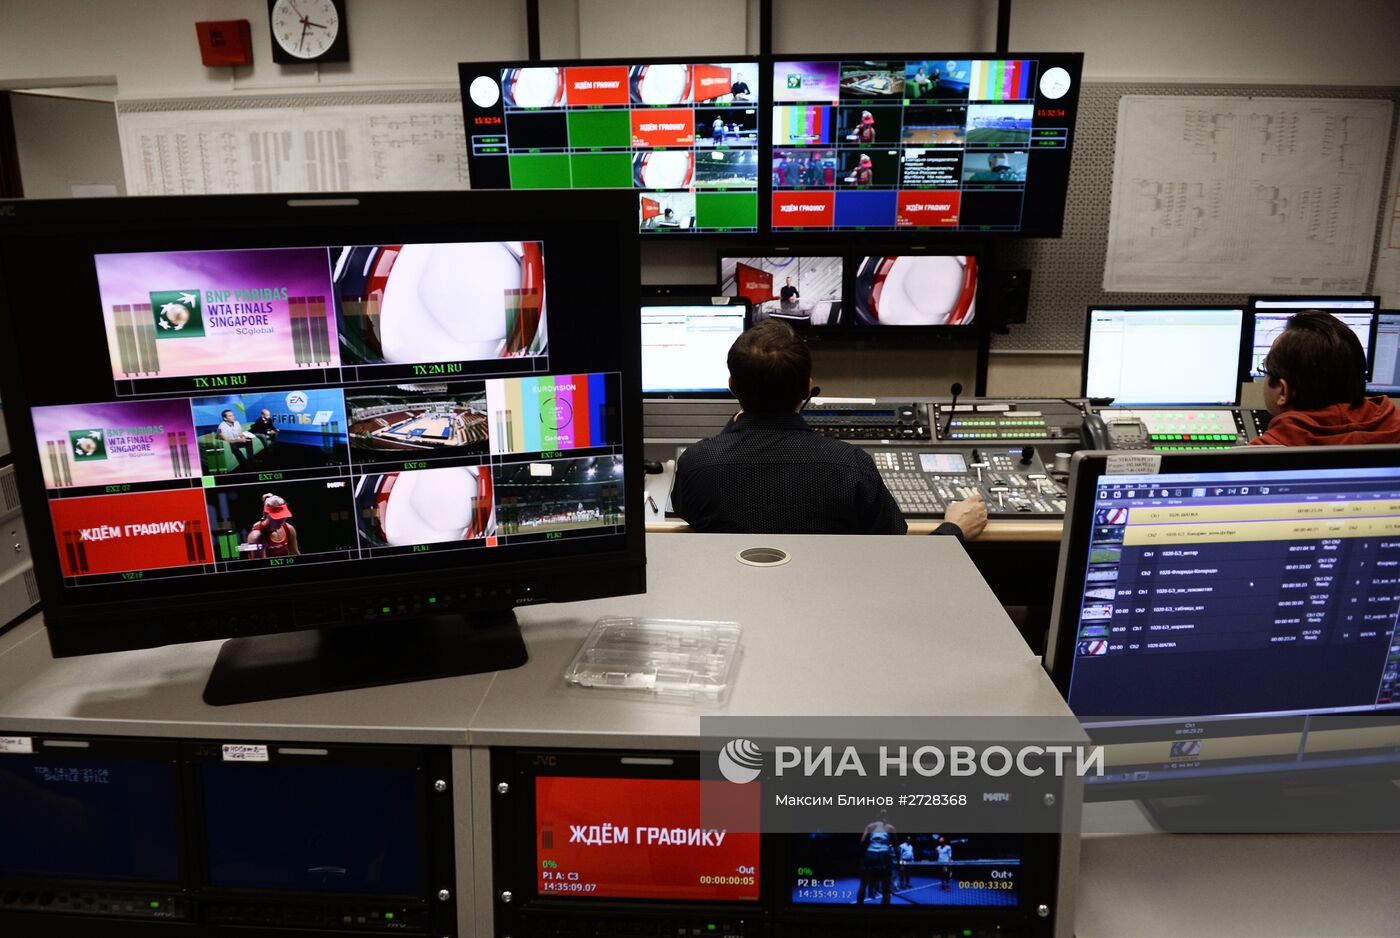 Подготовка к открытию вещания канала "Матч ТВ"